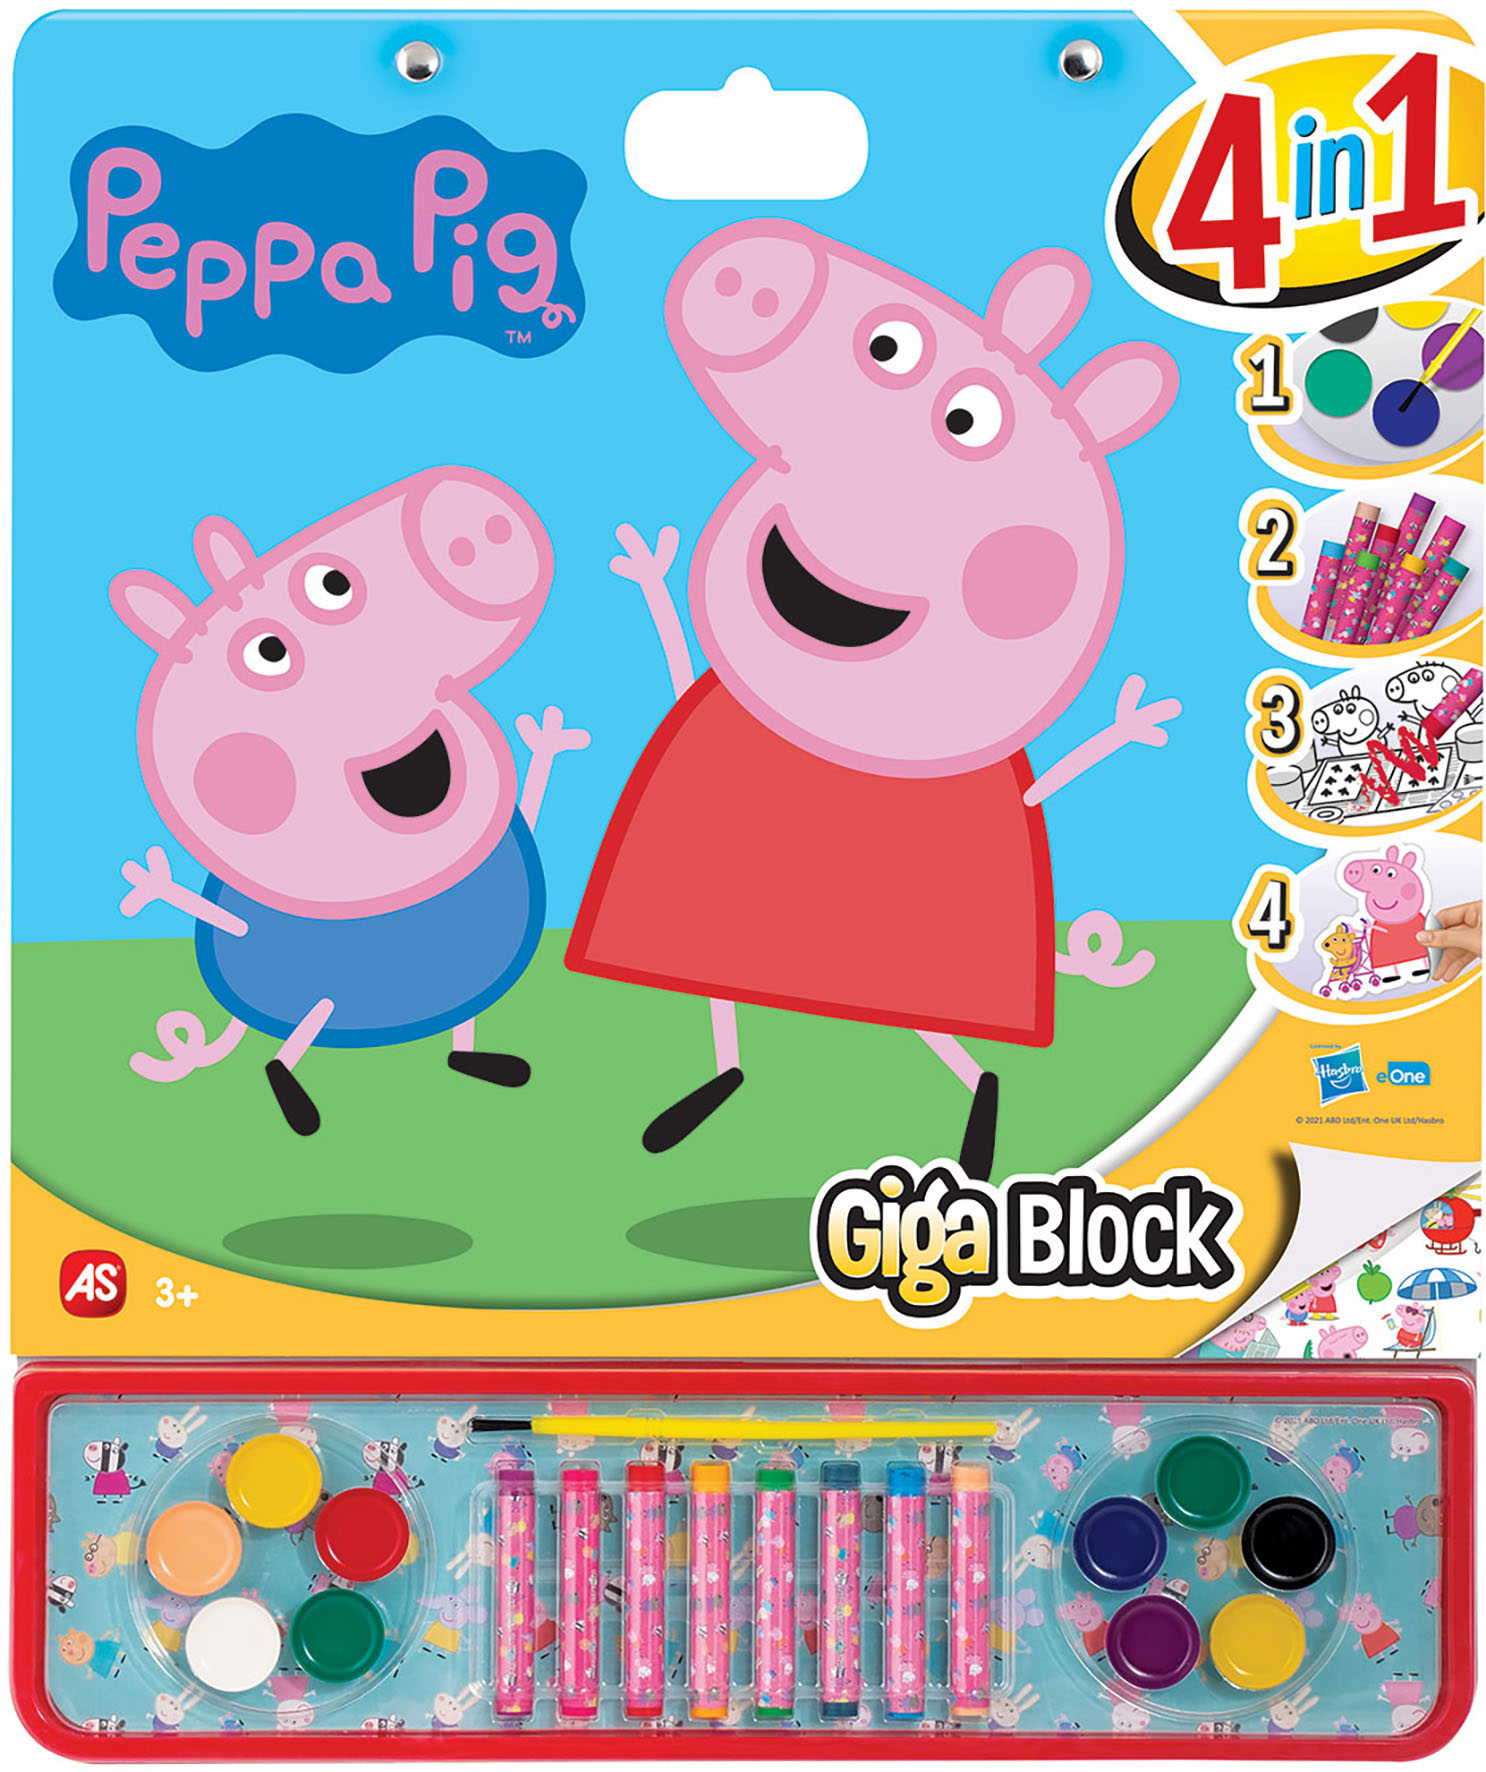 GIGA BLOCK 4IN1 PEPPA PIG     